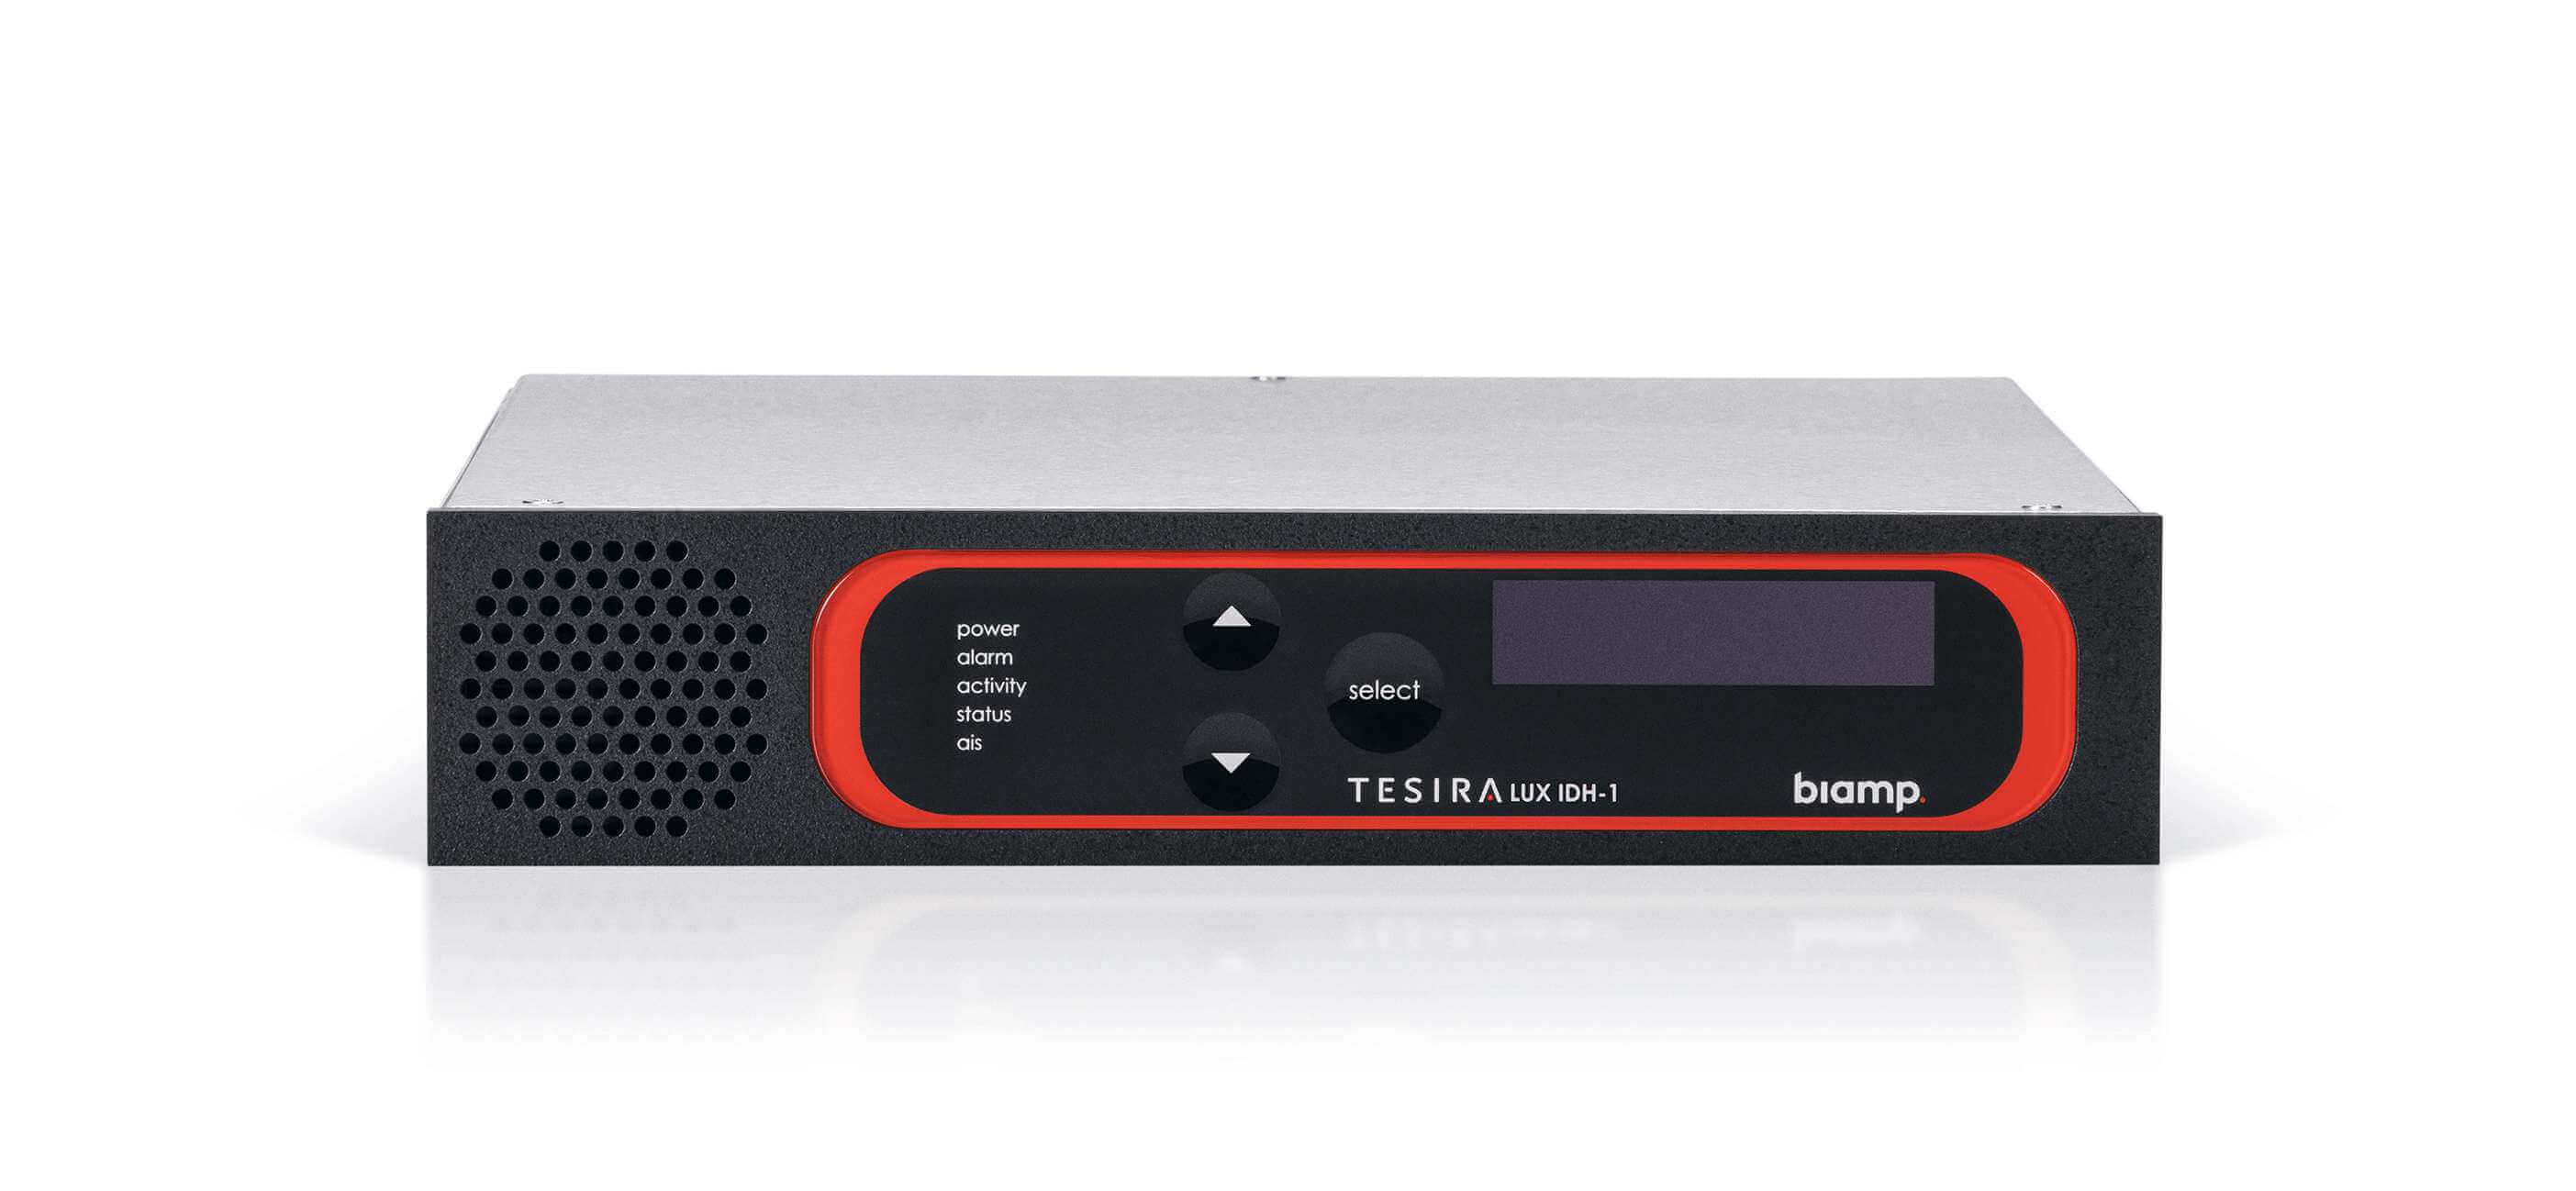 Biamp  Tesiralux Idh-1, Codificador De Video Avb; Incluye Un Puerto Hdmi 2.0 Y Un Puerto Displayport